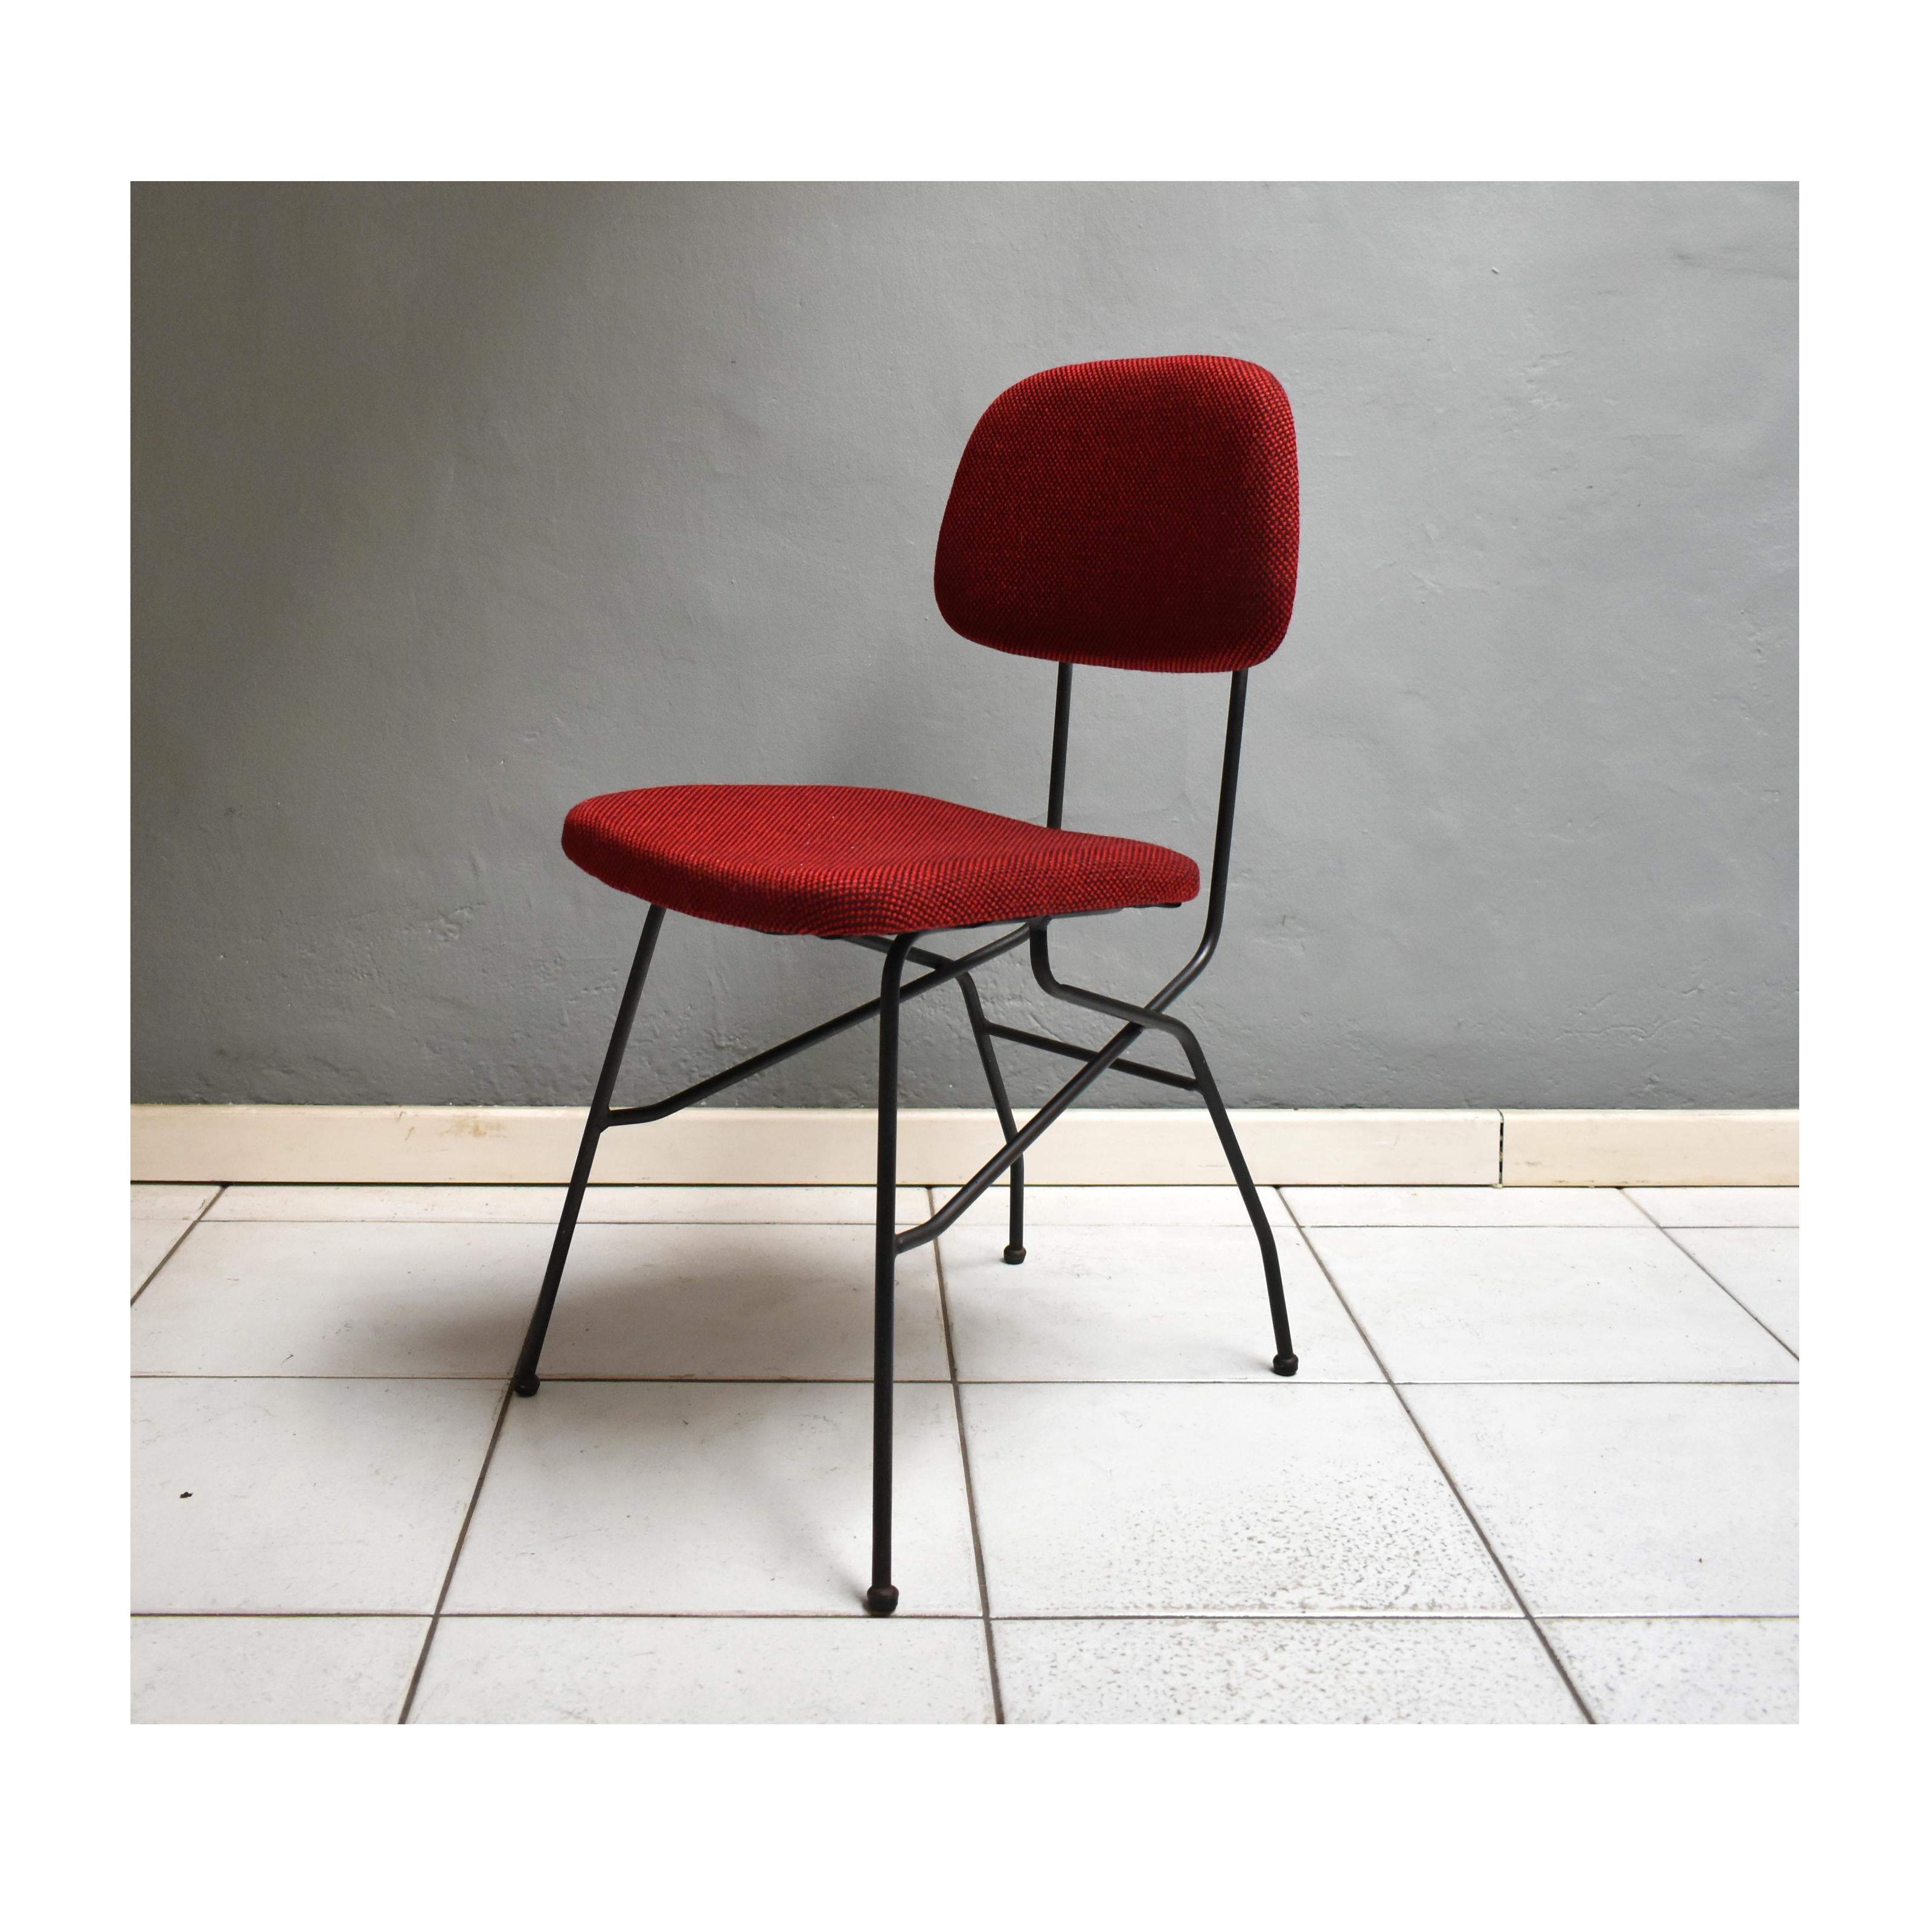 Ensemble de quatre chaises vintage des années 60, de fabrication italienne.
Les chaises ont une structure en fer noir avec une assise et un dossier en tissu rouge-bordeaux à pois noirs. A l'arrière du dos, il y a des boutons en